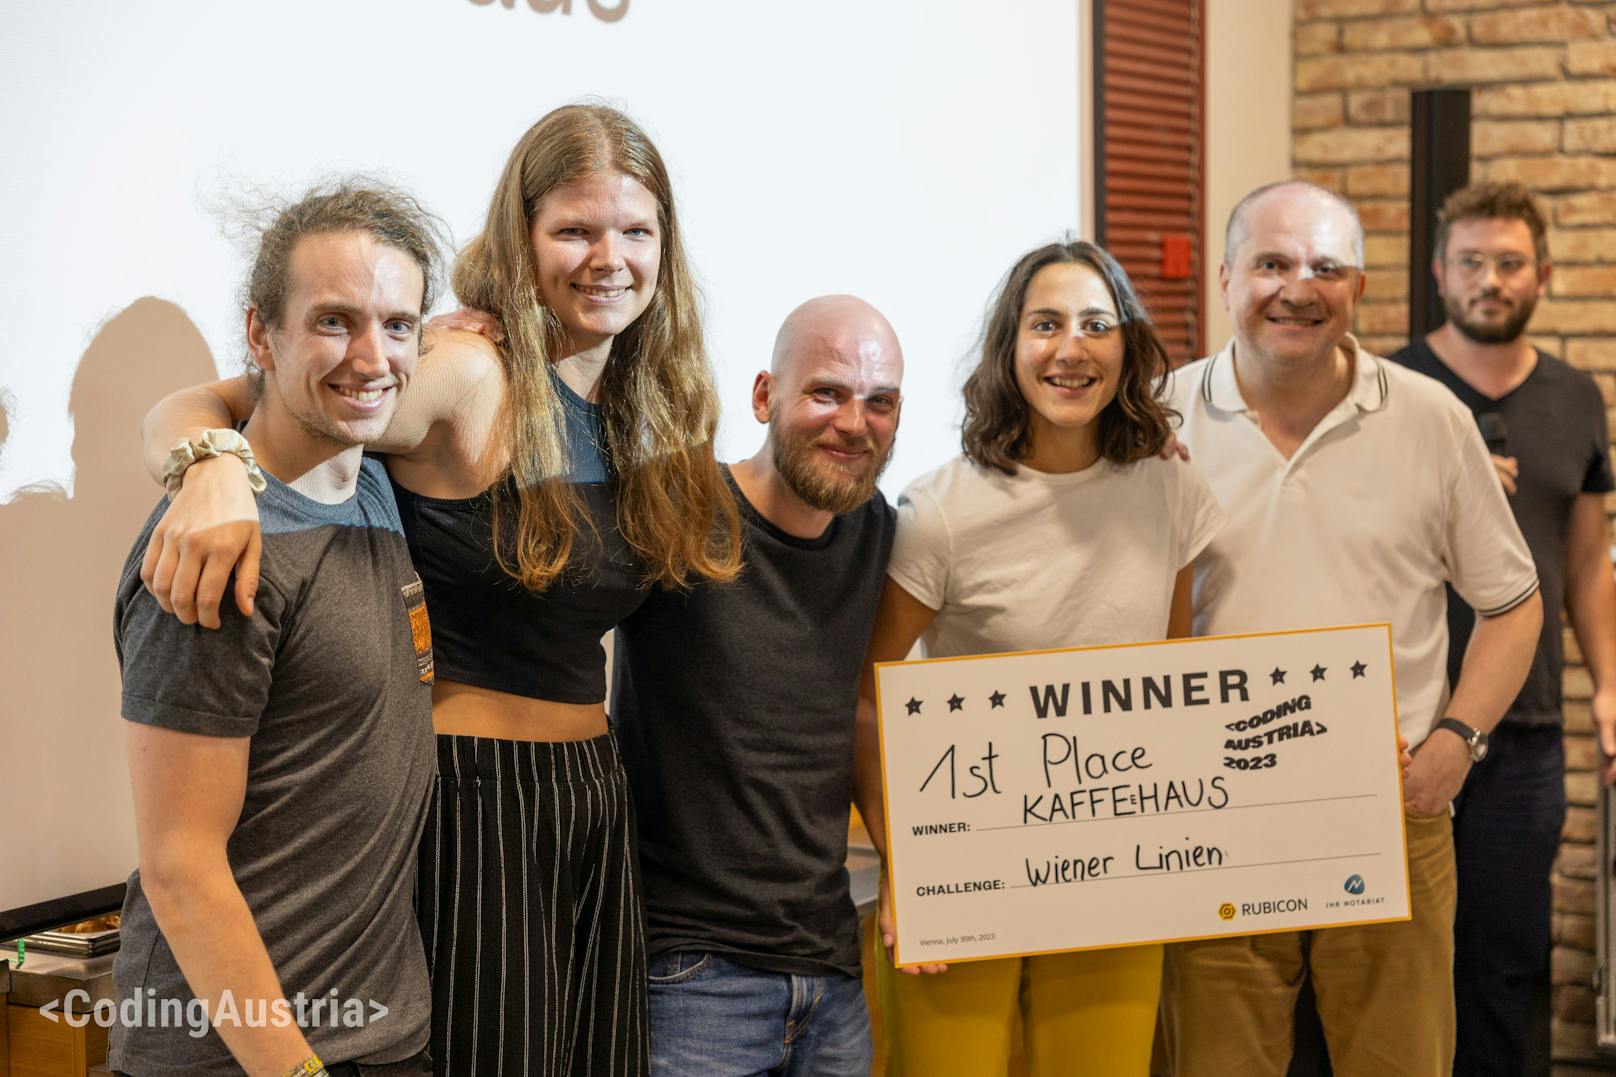 Das Team "Kaffeehaus" hat sich in 24 Stunden nicht nur eine App, sondern auch den Sieg des 2. &lt; CodingAustria &gt; Hackathons erarbeitet.